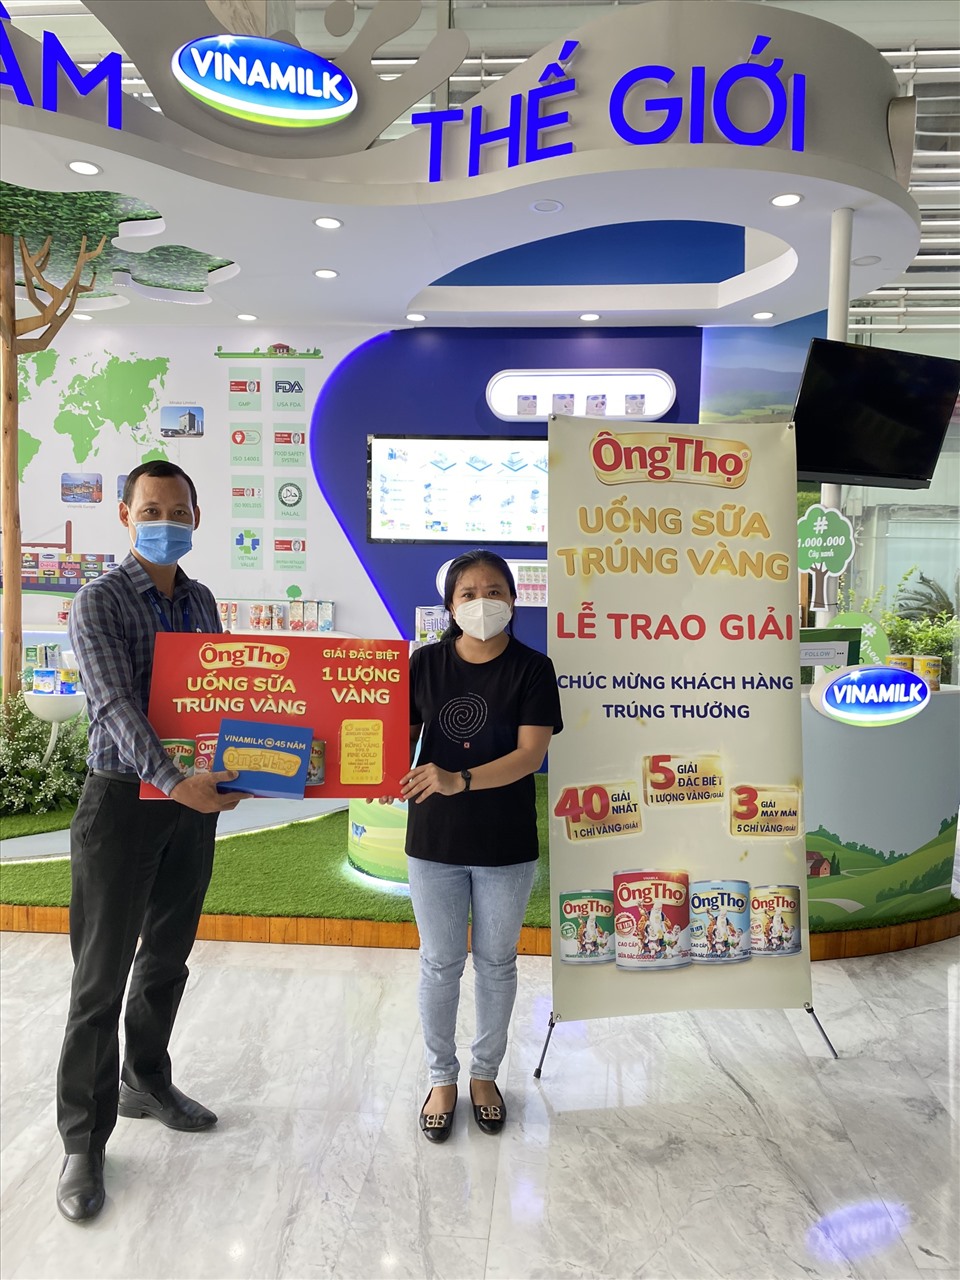 Chị Thu Thảo - Quận Bình Tân, TP.HCM, một trong những khách hàng may mắn “rinh” giải đặc biệt – 1 lượng vàng.